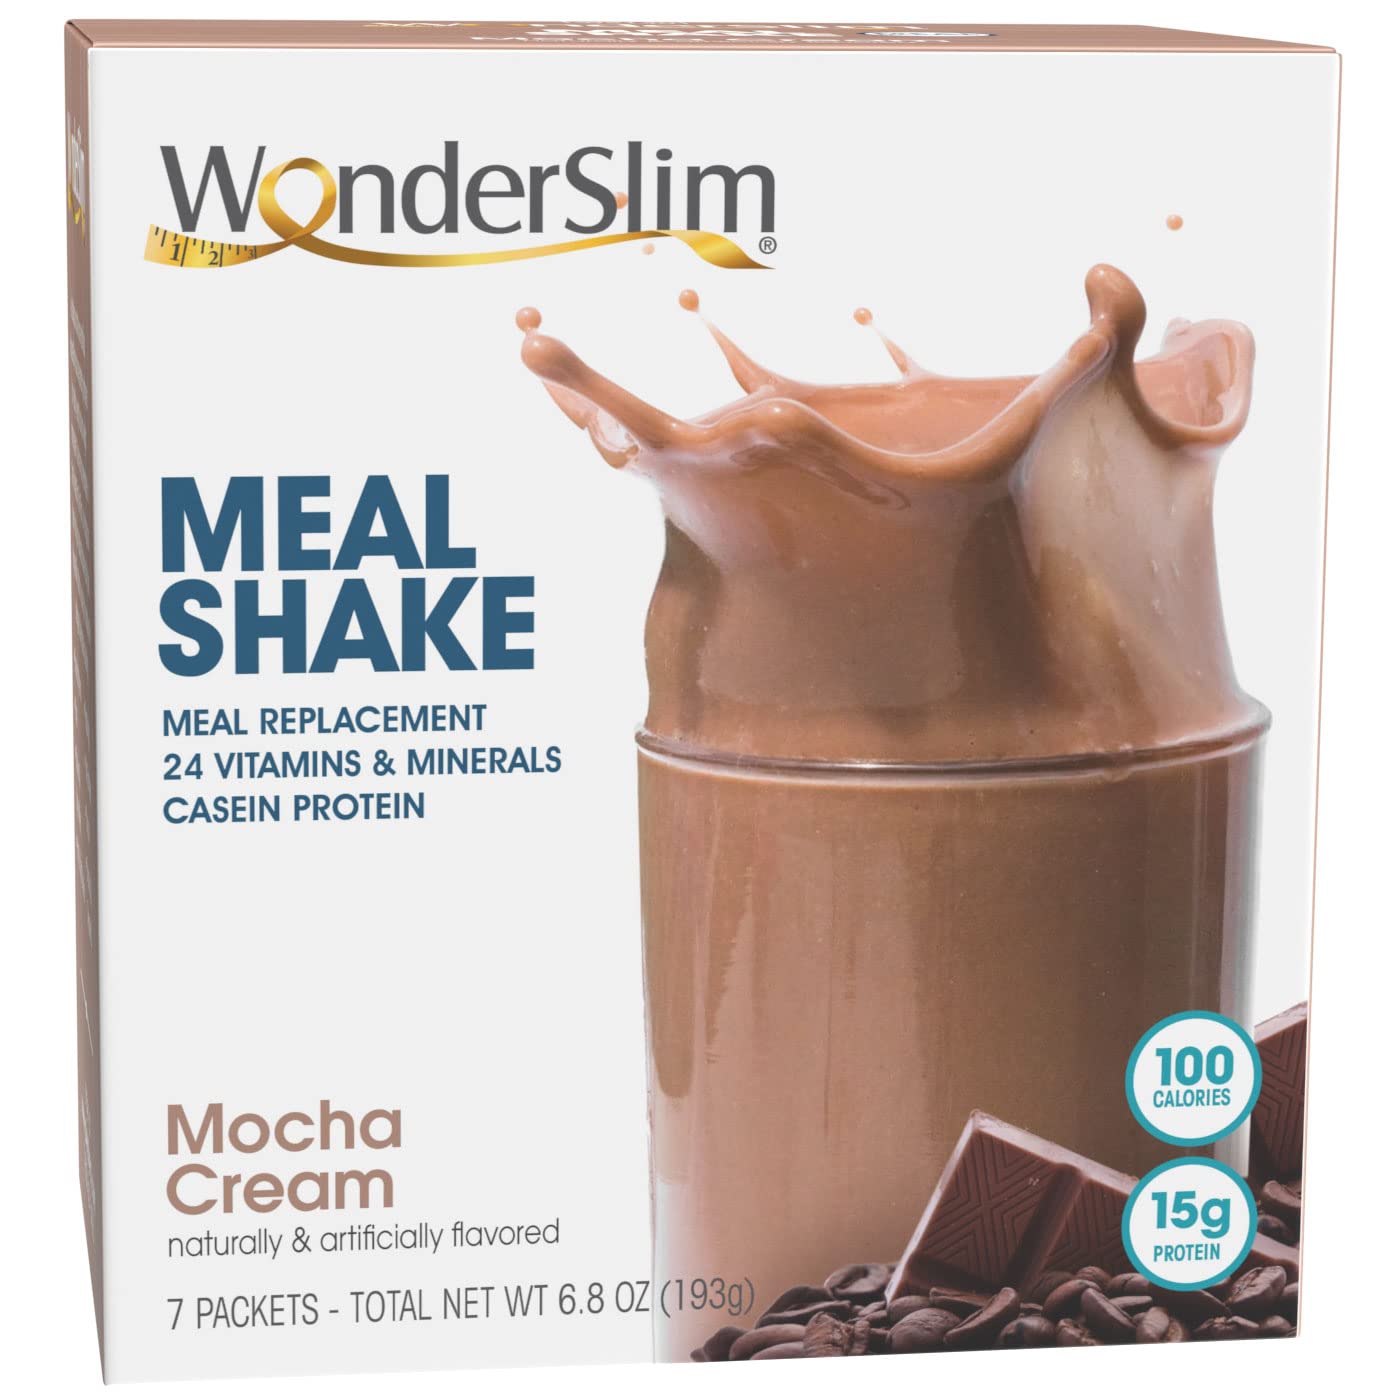 WonderSlim Meal Replacement Shake, Mocha Cream, 15g Protein, 24 Vitamins & Minerals, Gluten Free (7ct)